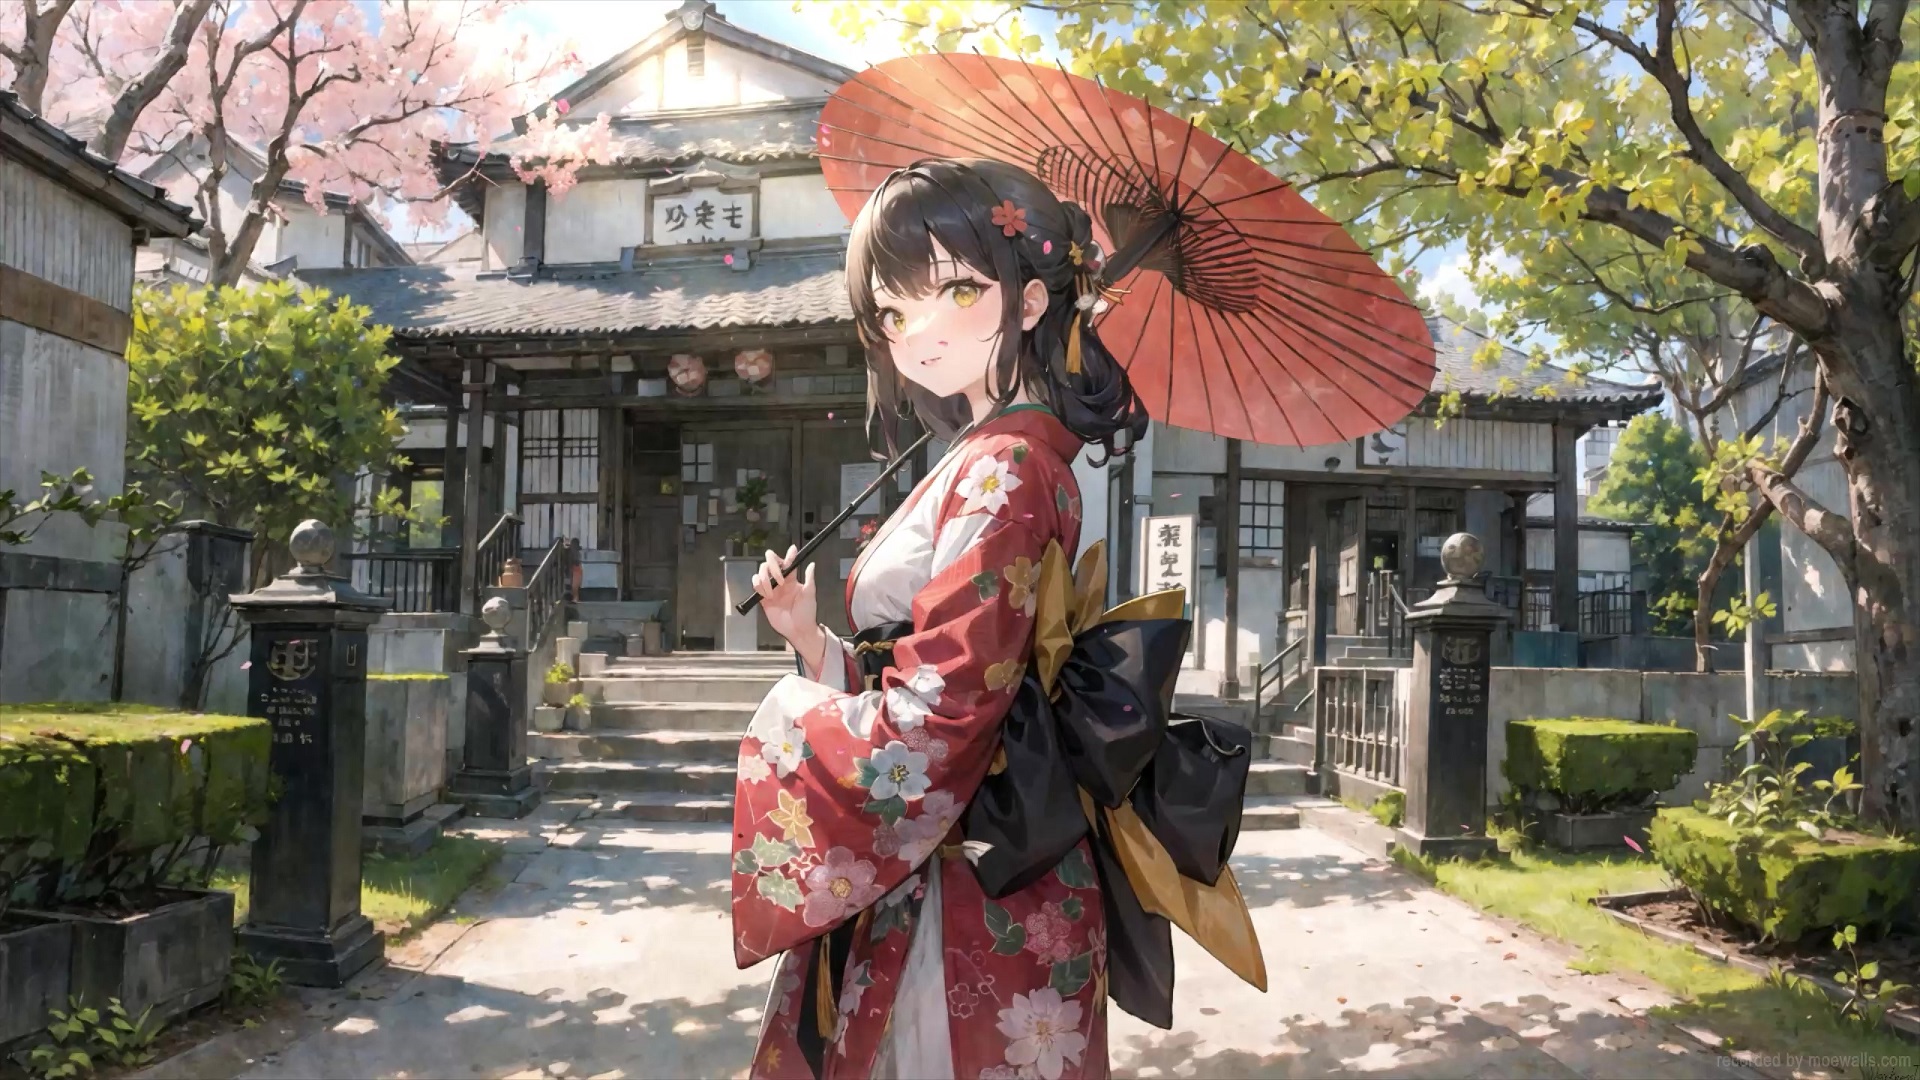 Kimono Anime Girls Stock Illustrations – 111 Kimono Anime Girls Stock  Illustrations, Vectors & Clipart - Dreamstime